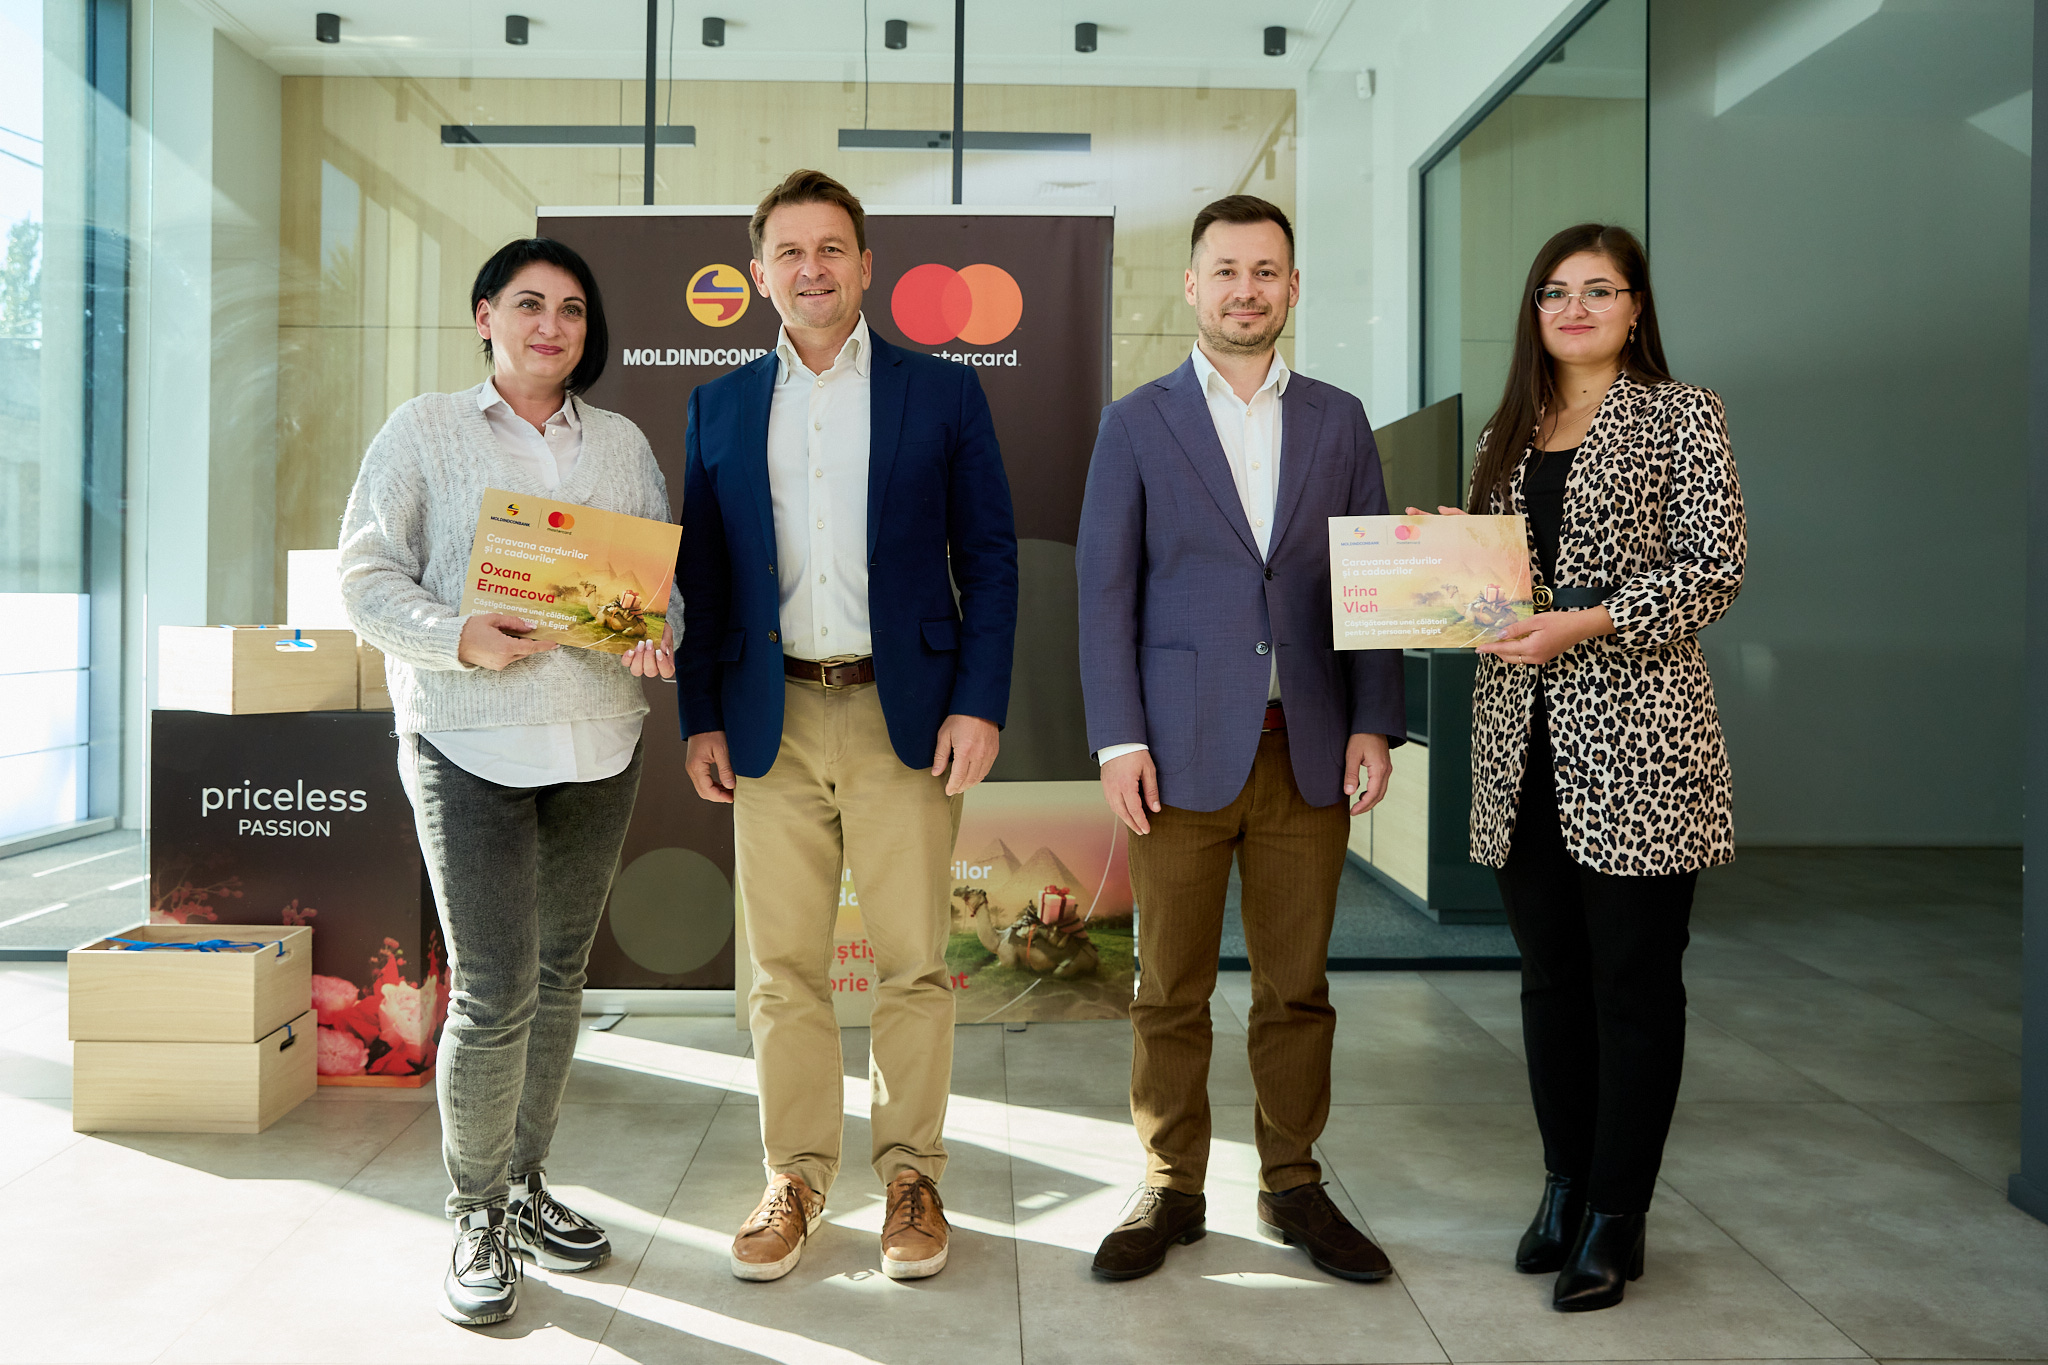 Felicitări celor 23 mari câștigători ai promoției ”Caravana cardurilor și a cadourilor”, organizată de Moldindconbank și Mastercard